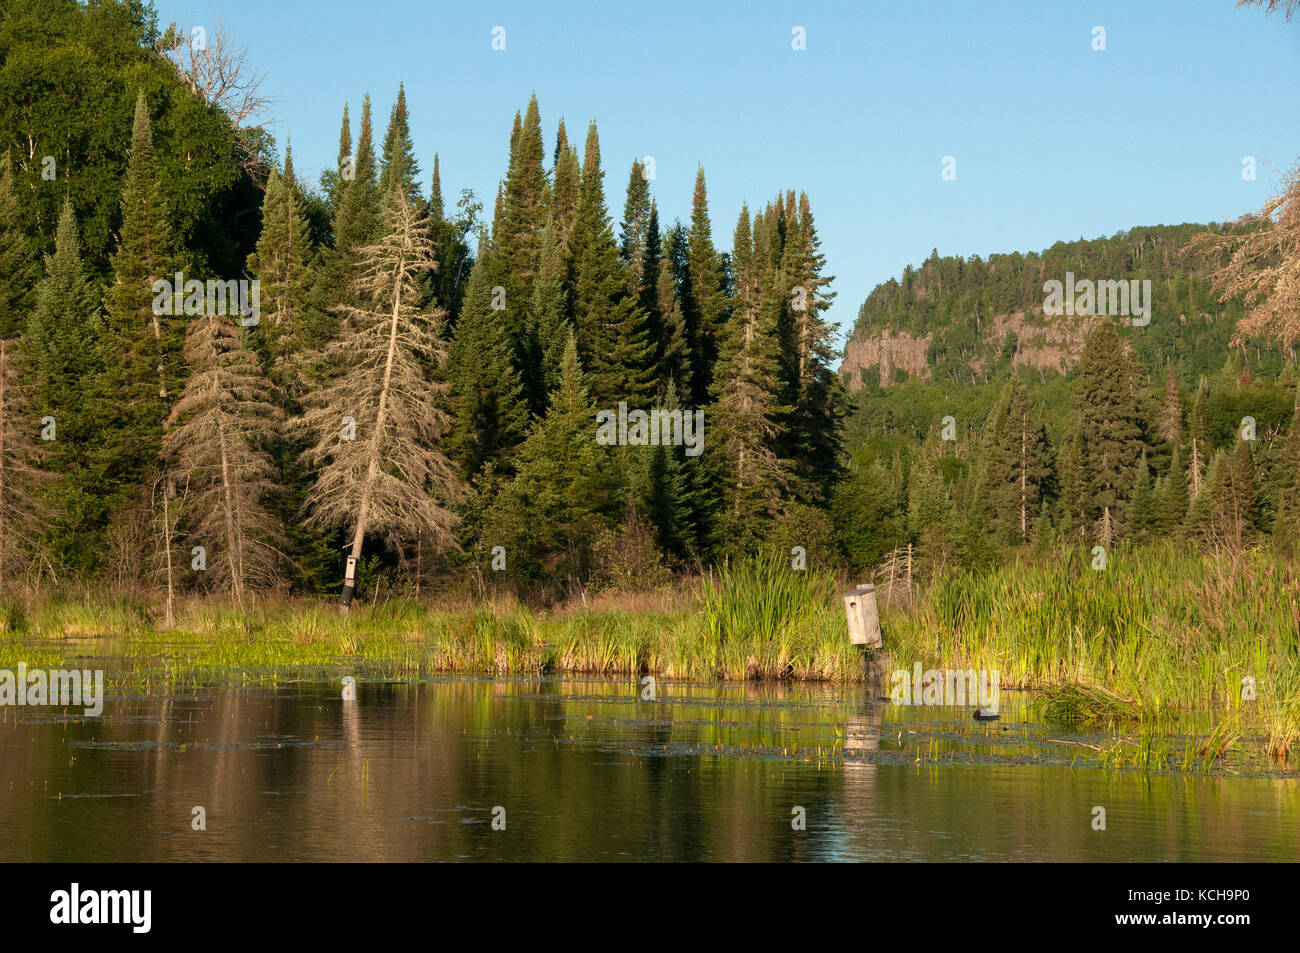 Des nichoirs pour les canards branchus sur un étang de castors dans la forêt boréale près du lac Supérieur, en Amérique du Nord. Banque D'Images